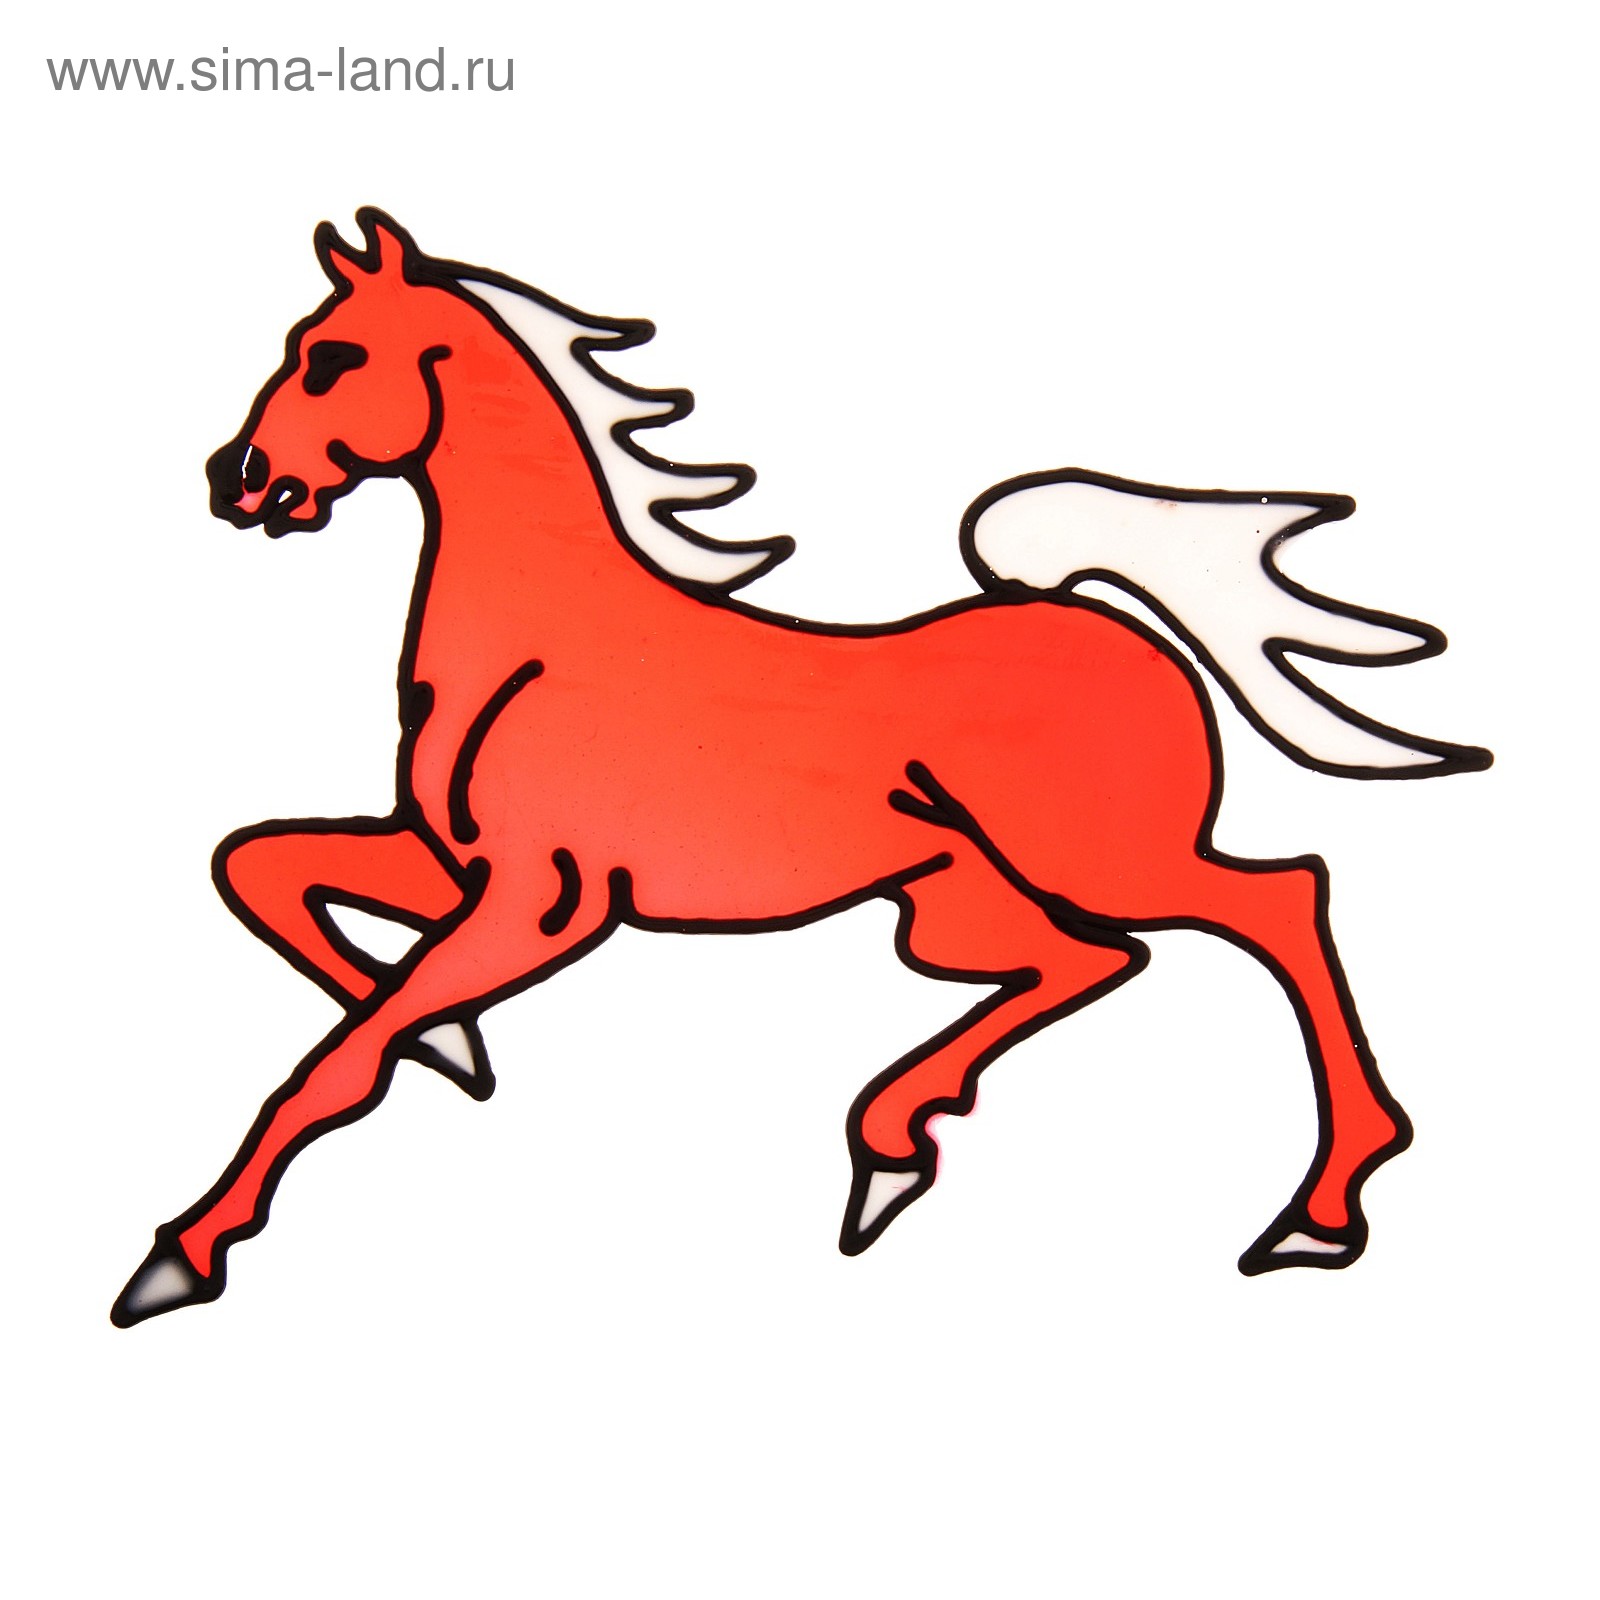 Наклейка красной лошадки